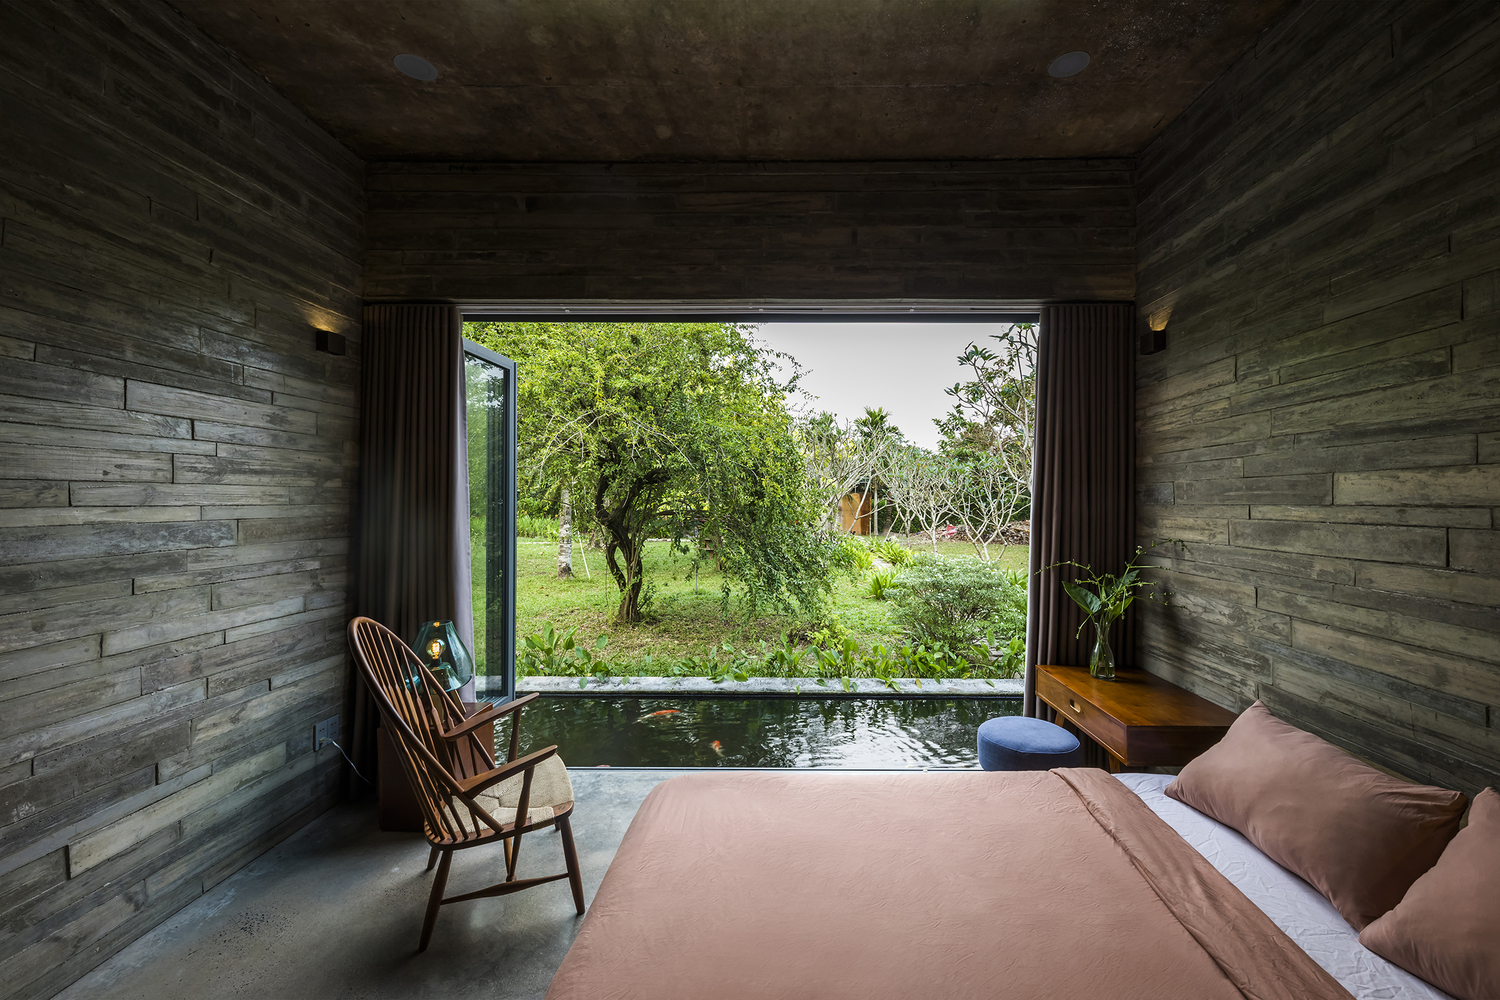 Am House: Biệt thự nhà vườn xanh mướt tại Long An với nét kiến trúc đặc trưng miền Tây Nam Bộ - Ảnh 13